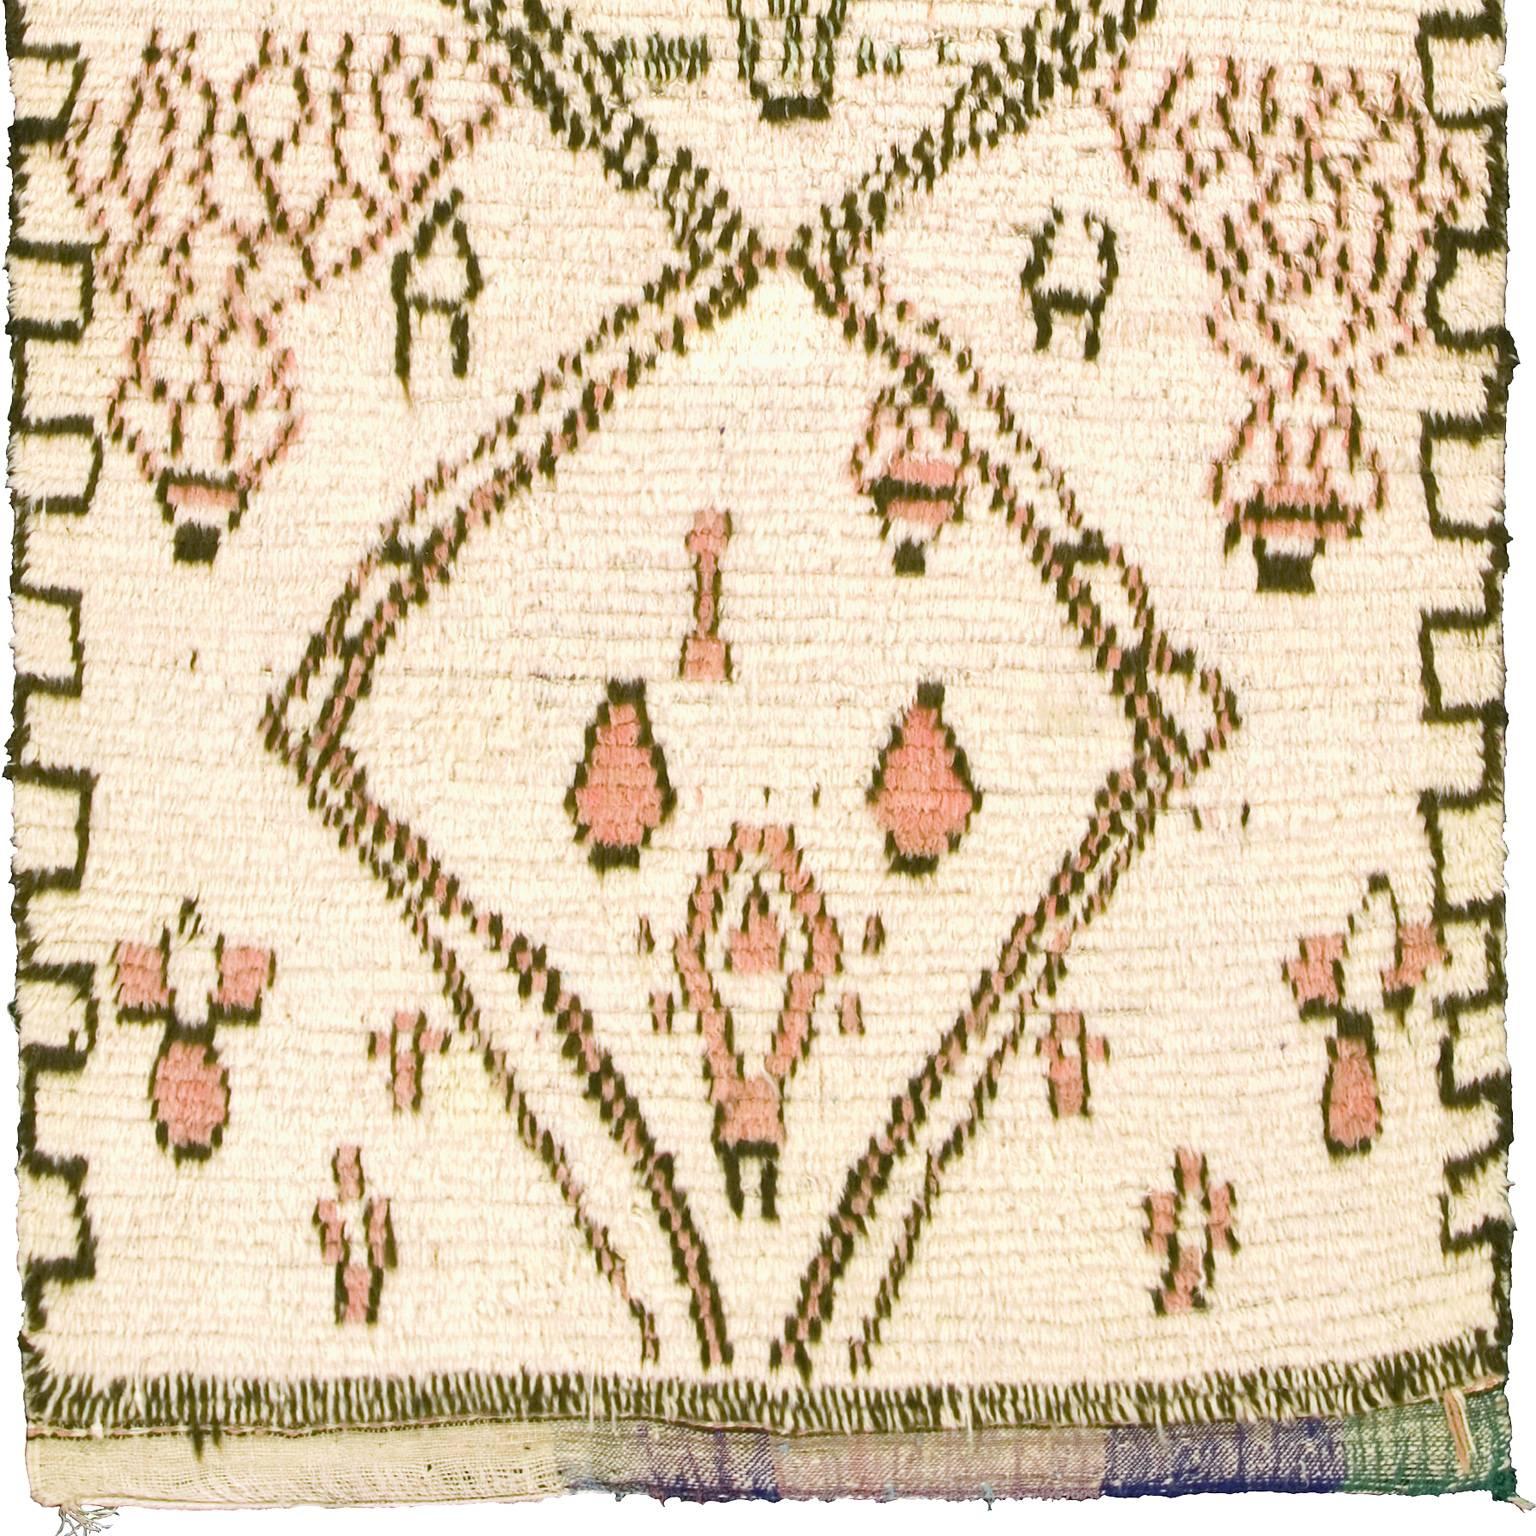 Marokkanischer Beni Ouarain Teppich aus der Mitte des 20
Marokko, um die Mitte des 20. Jahrhunderts
Handgewebt.